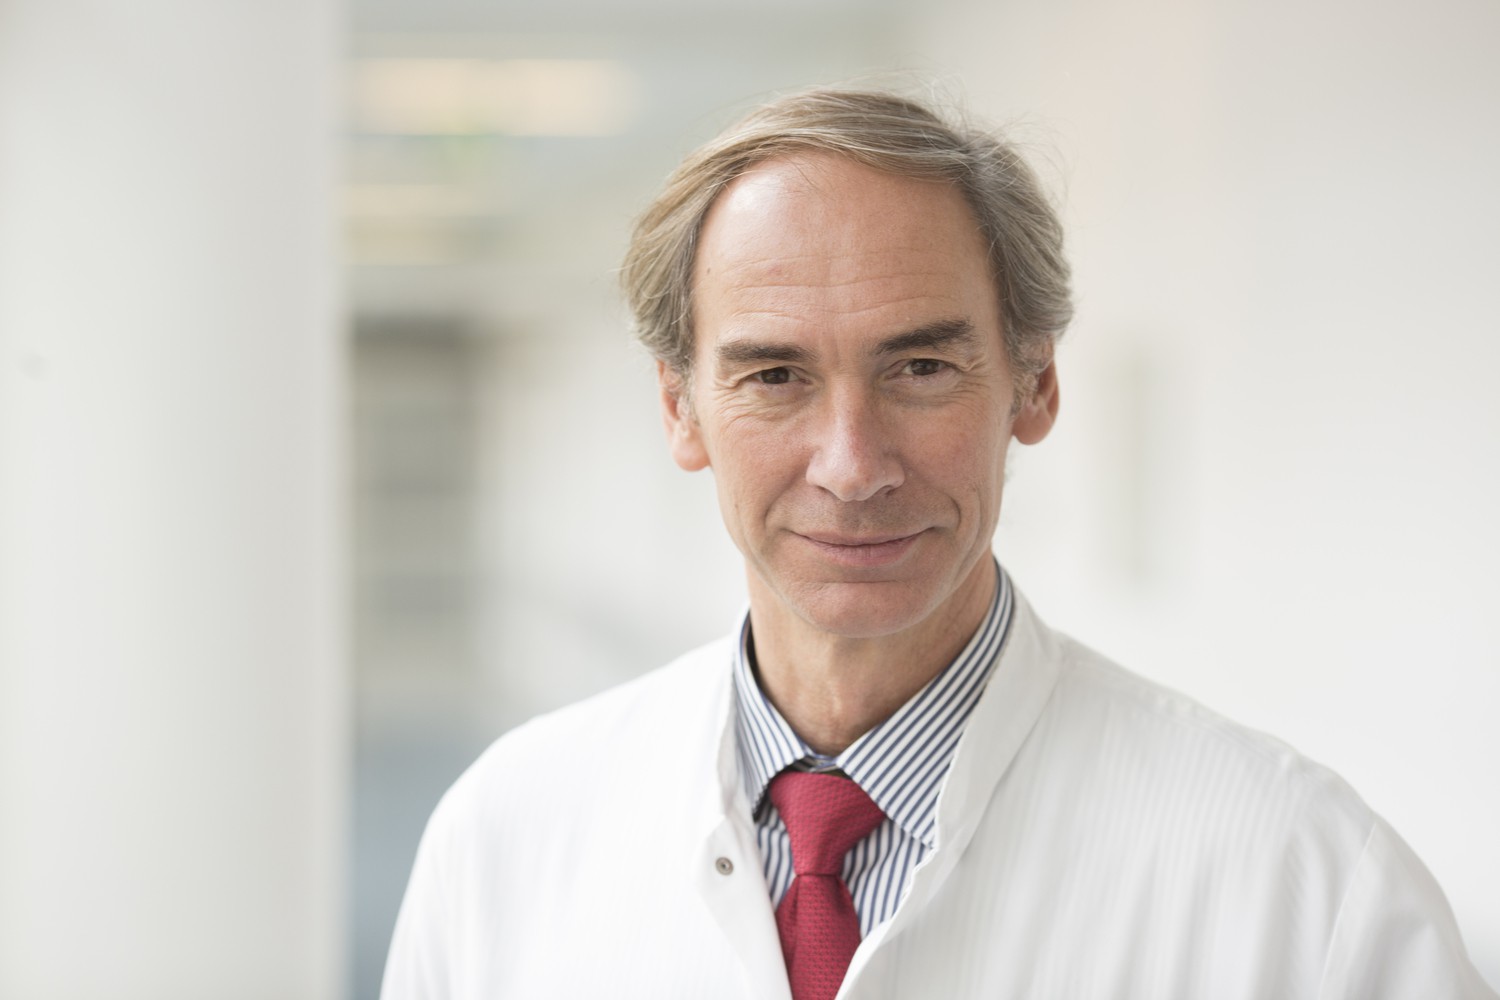 Setzt sich für die Anliegen Lebererkrankter in der europäischen Gesundheitspolitik ein: Prof. Thomas Berg, Leiter des Bereichs Hepatologie am UKL, ist neuer Generalsekretär der Europäischen Arbeitsgemeinschaft zum Studium der Leber (EASL).